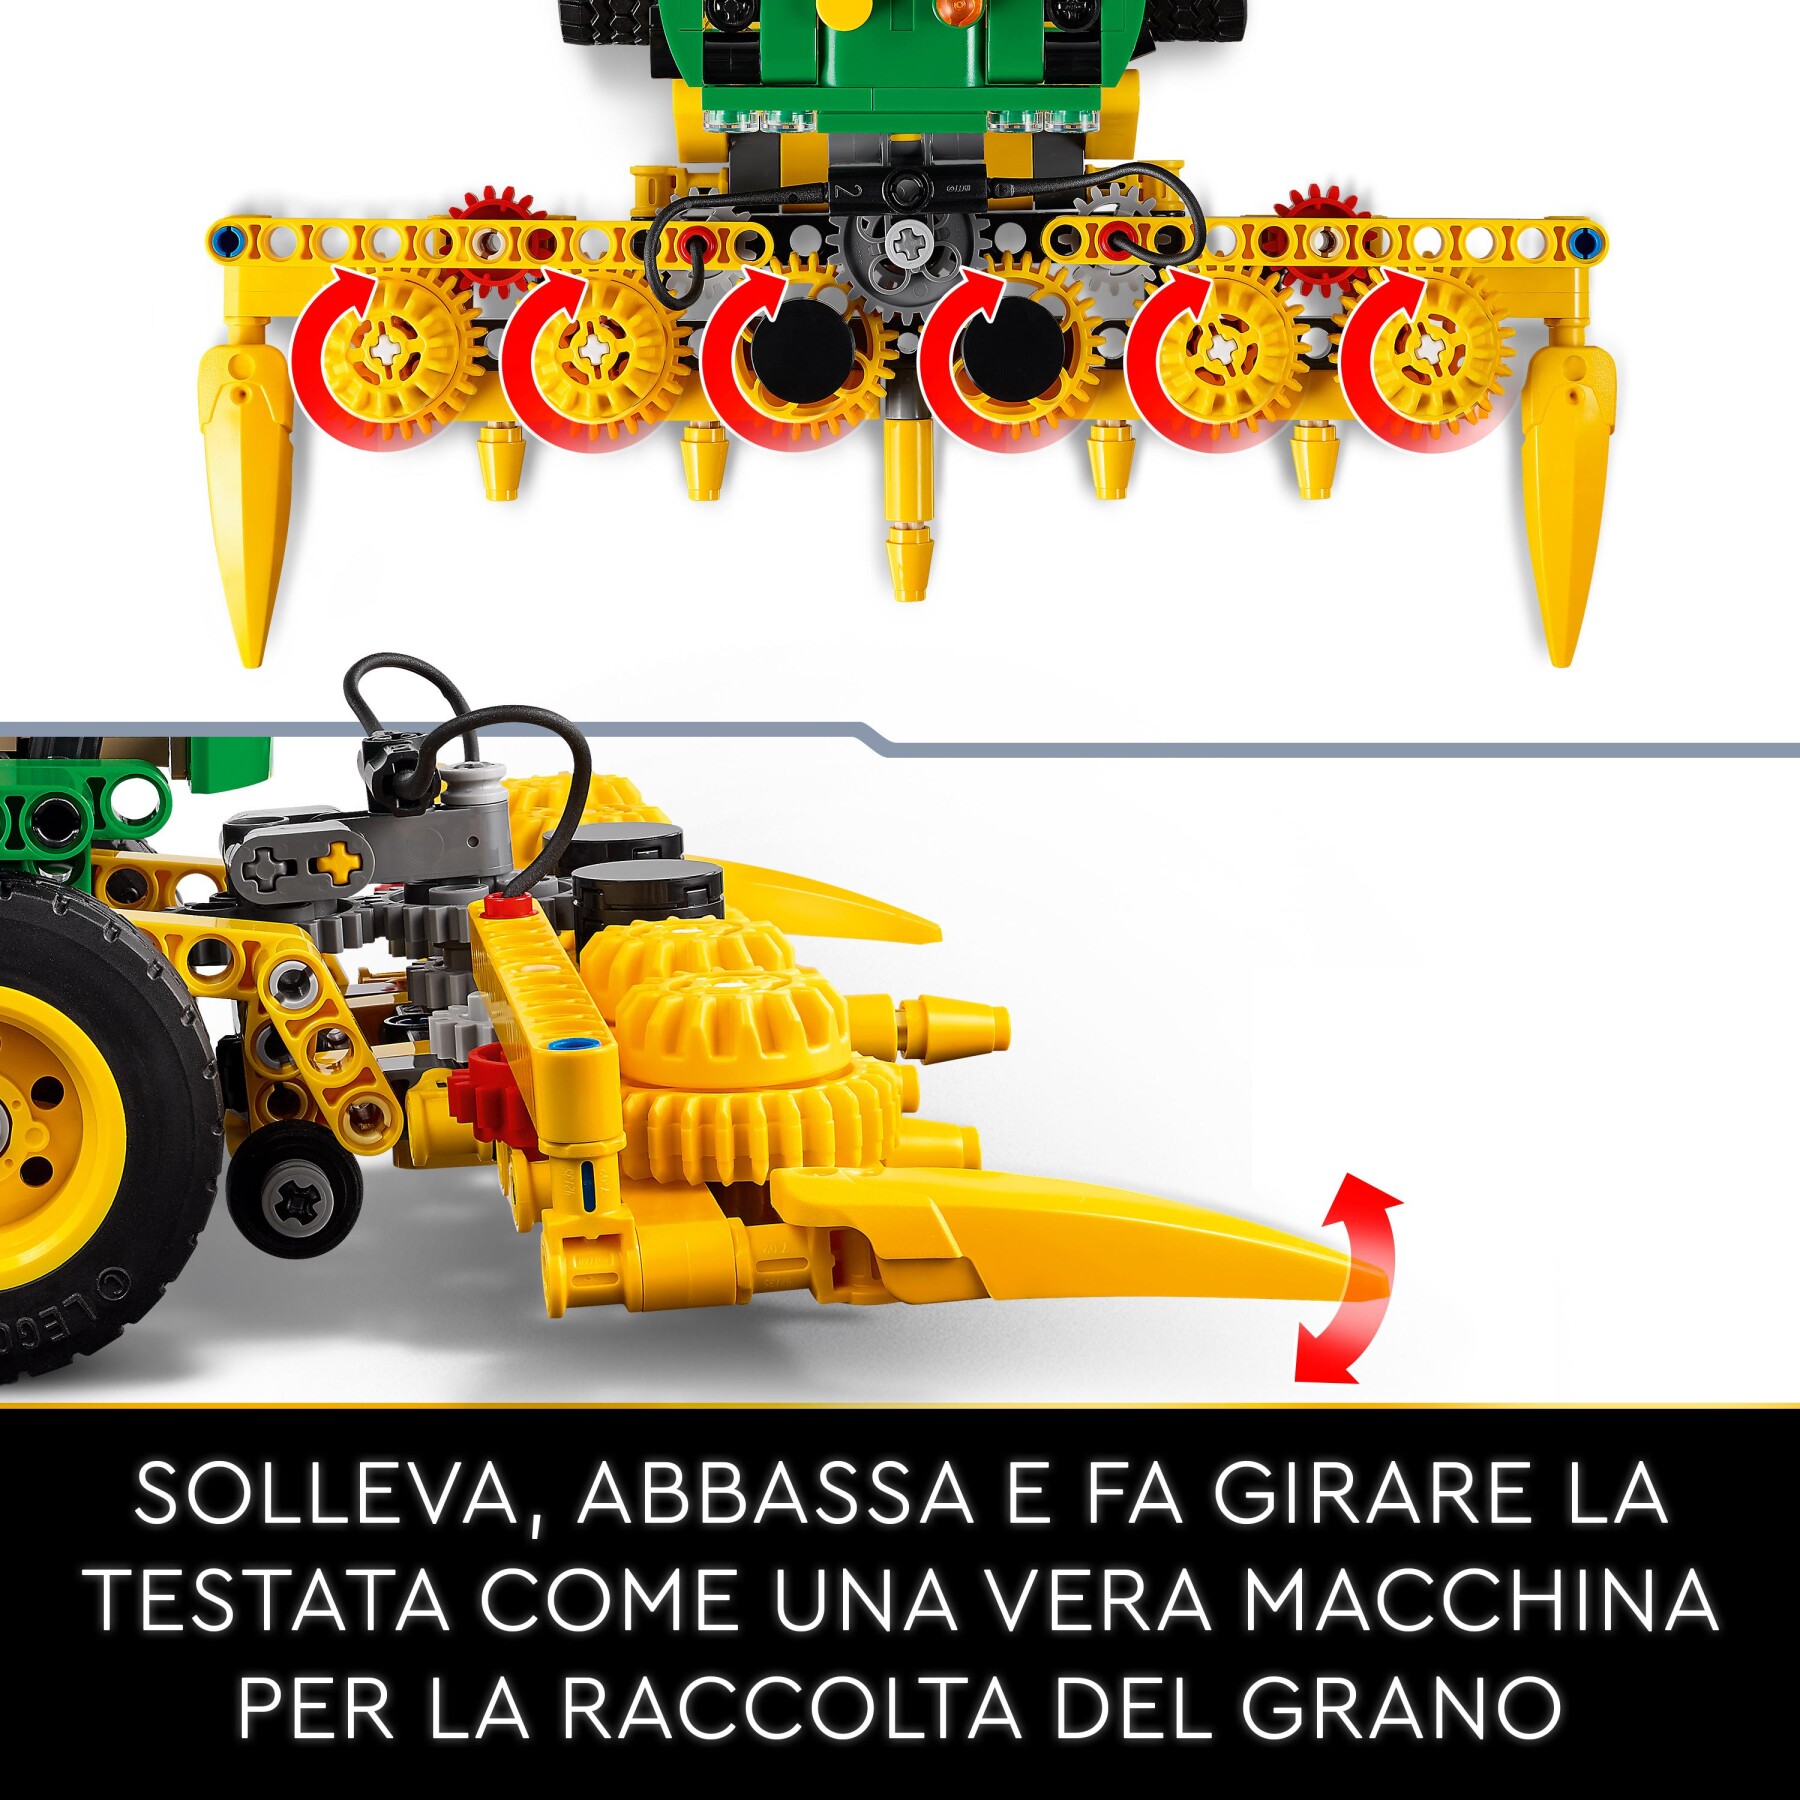 Lego technic 42168 john deere 9700 forage harvester, trattore giocattolo per bambini 9+ anni, veicolo mietitrebbia funzionante - LEGO TECHNIC